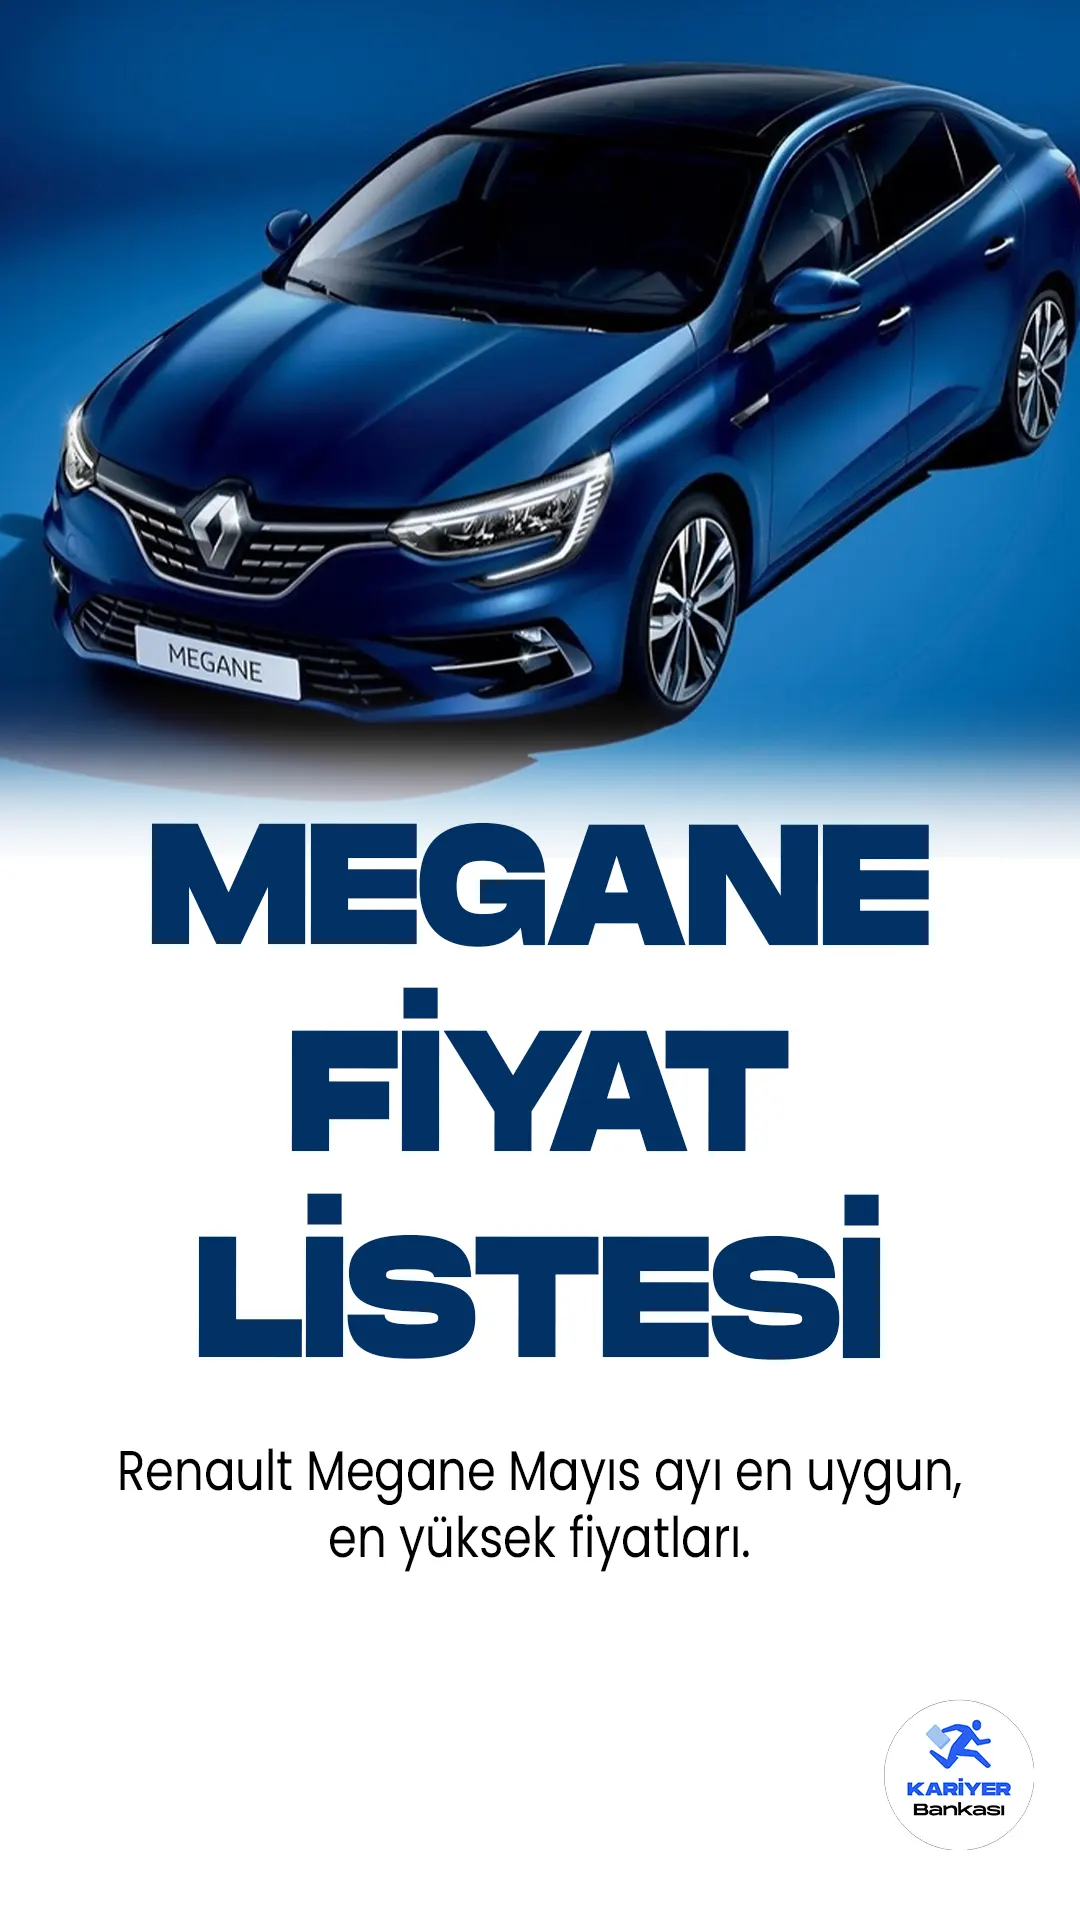 Renault Megan Mayıs 2023 Fiyat Listesi Yayımlandı. Türkiye'nin en popüler araç markalarından biri olan Renault, fiyat listelerini güncellemeye devam ediyor. Renault Megane, sürücülerin en çok tercih ettiği modeller arasında yer alıyor. Modern ve dinamik tasamıyla, araç sürücülerine konforlu bir sürüş desteği sağlıyor. Uygun fiyatlı olmasından dolayı da, ülkemizde en çok satan araç modellerinden biridir.